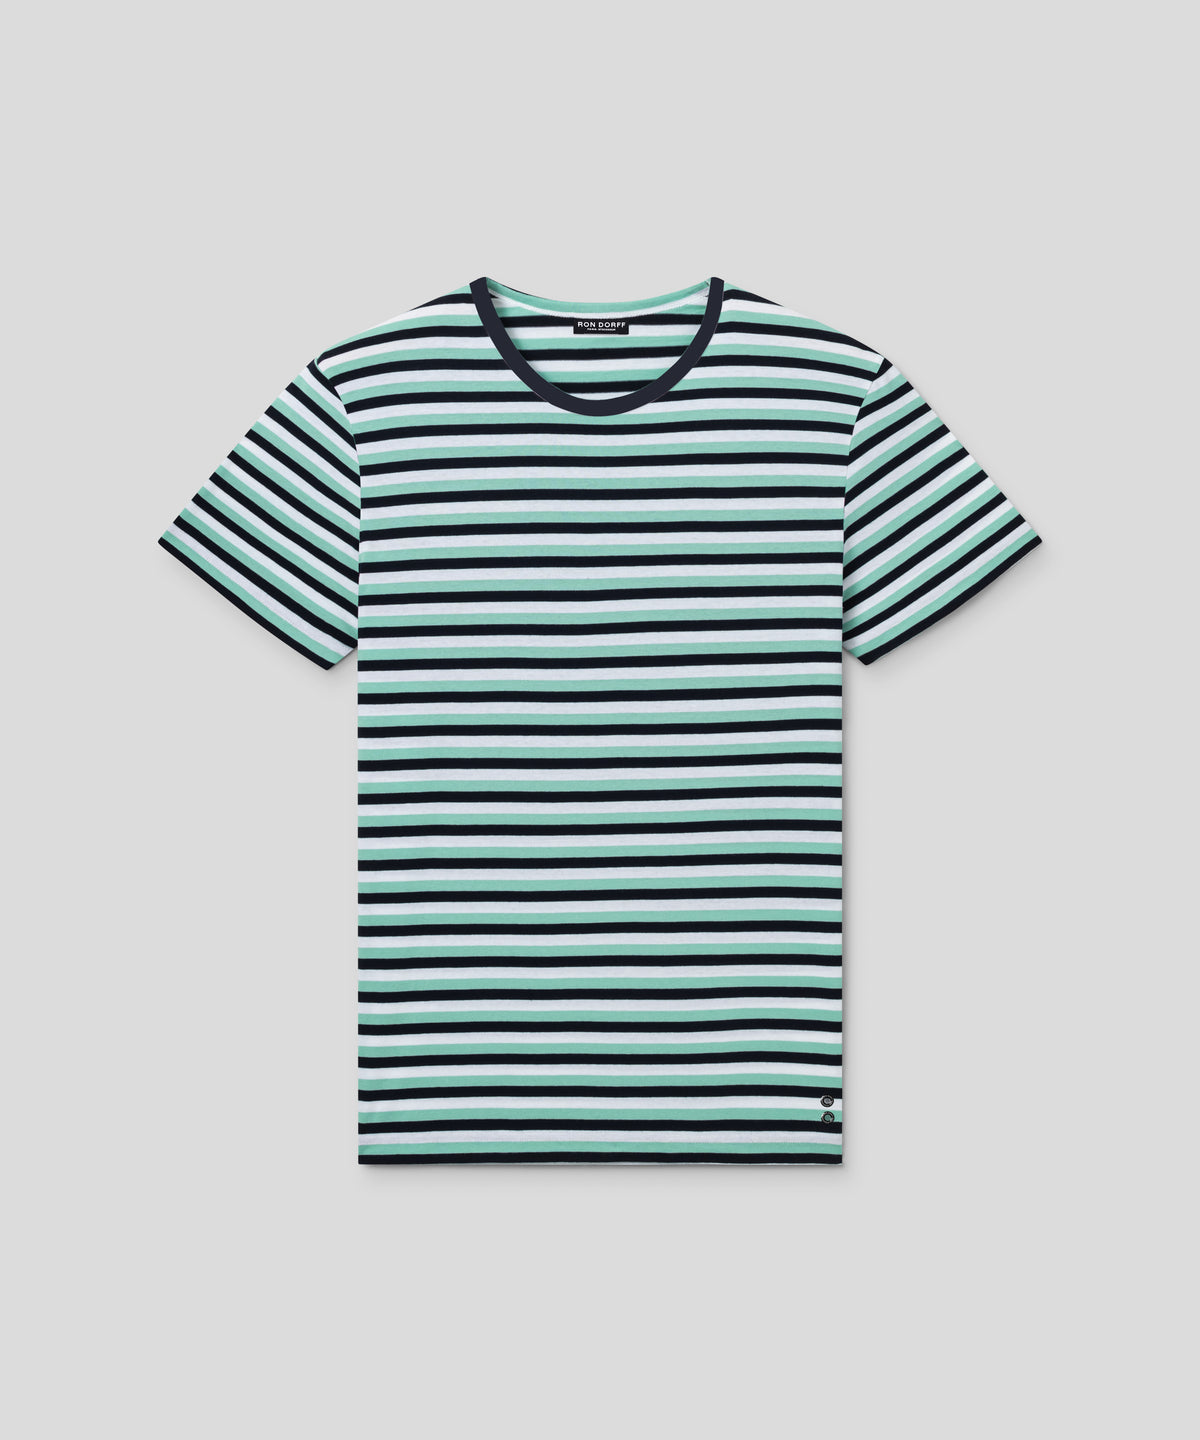 T-shirt col rond en coton avec lignes tricolores: Vert gazon/Bleu marine/Blanc